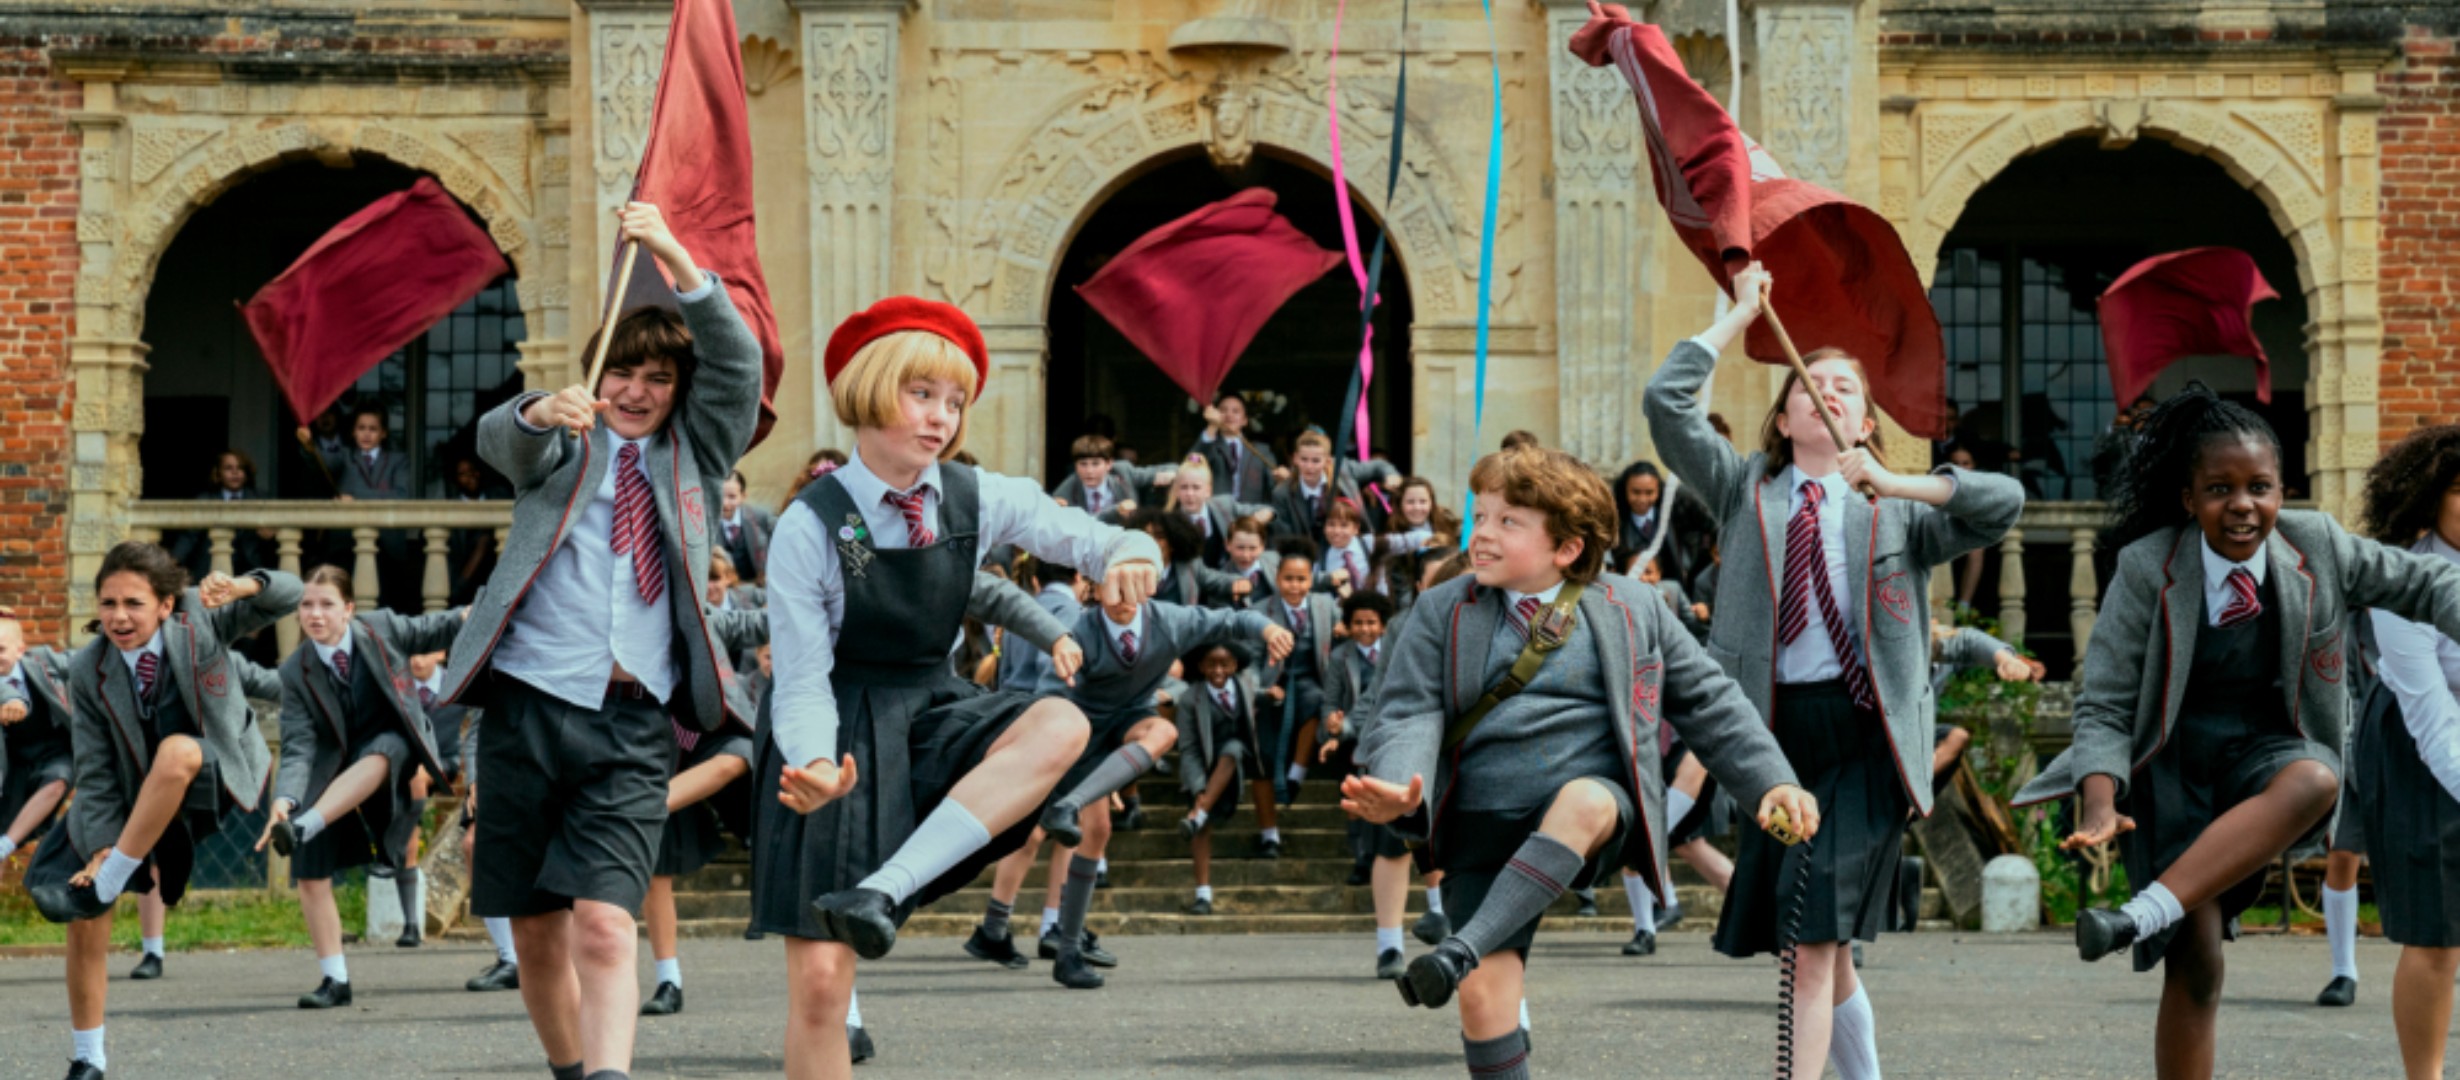 group of children in school uniform happily dancing